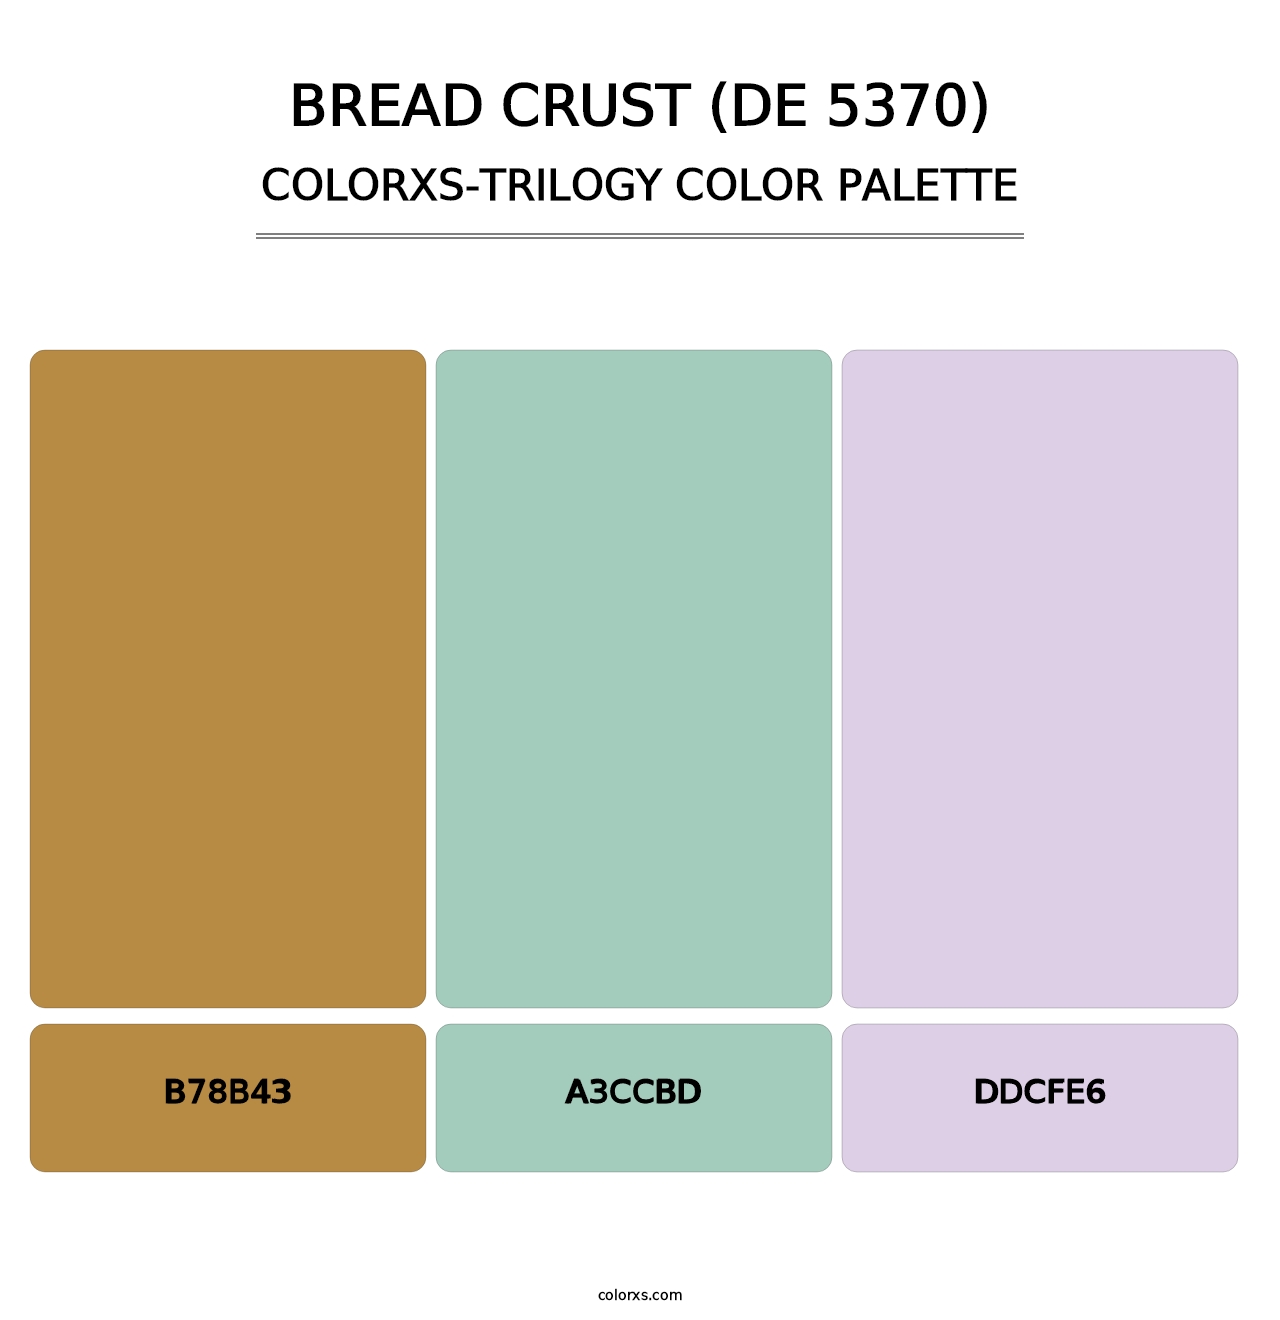 Bread Crust (DE 5370) - Colorxs Trilogy Palette